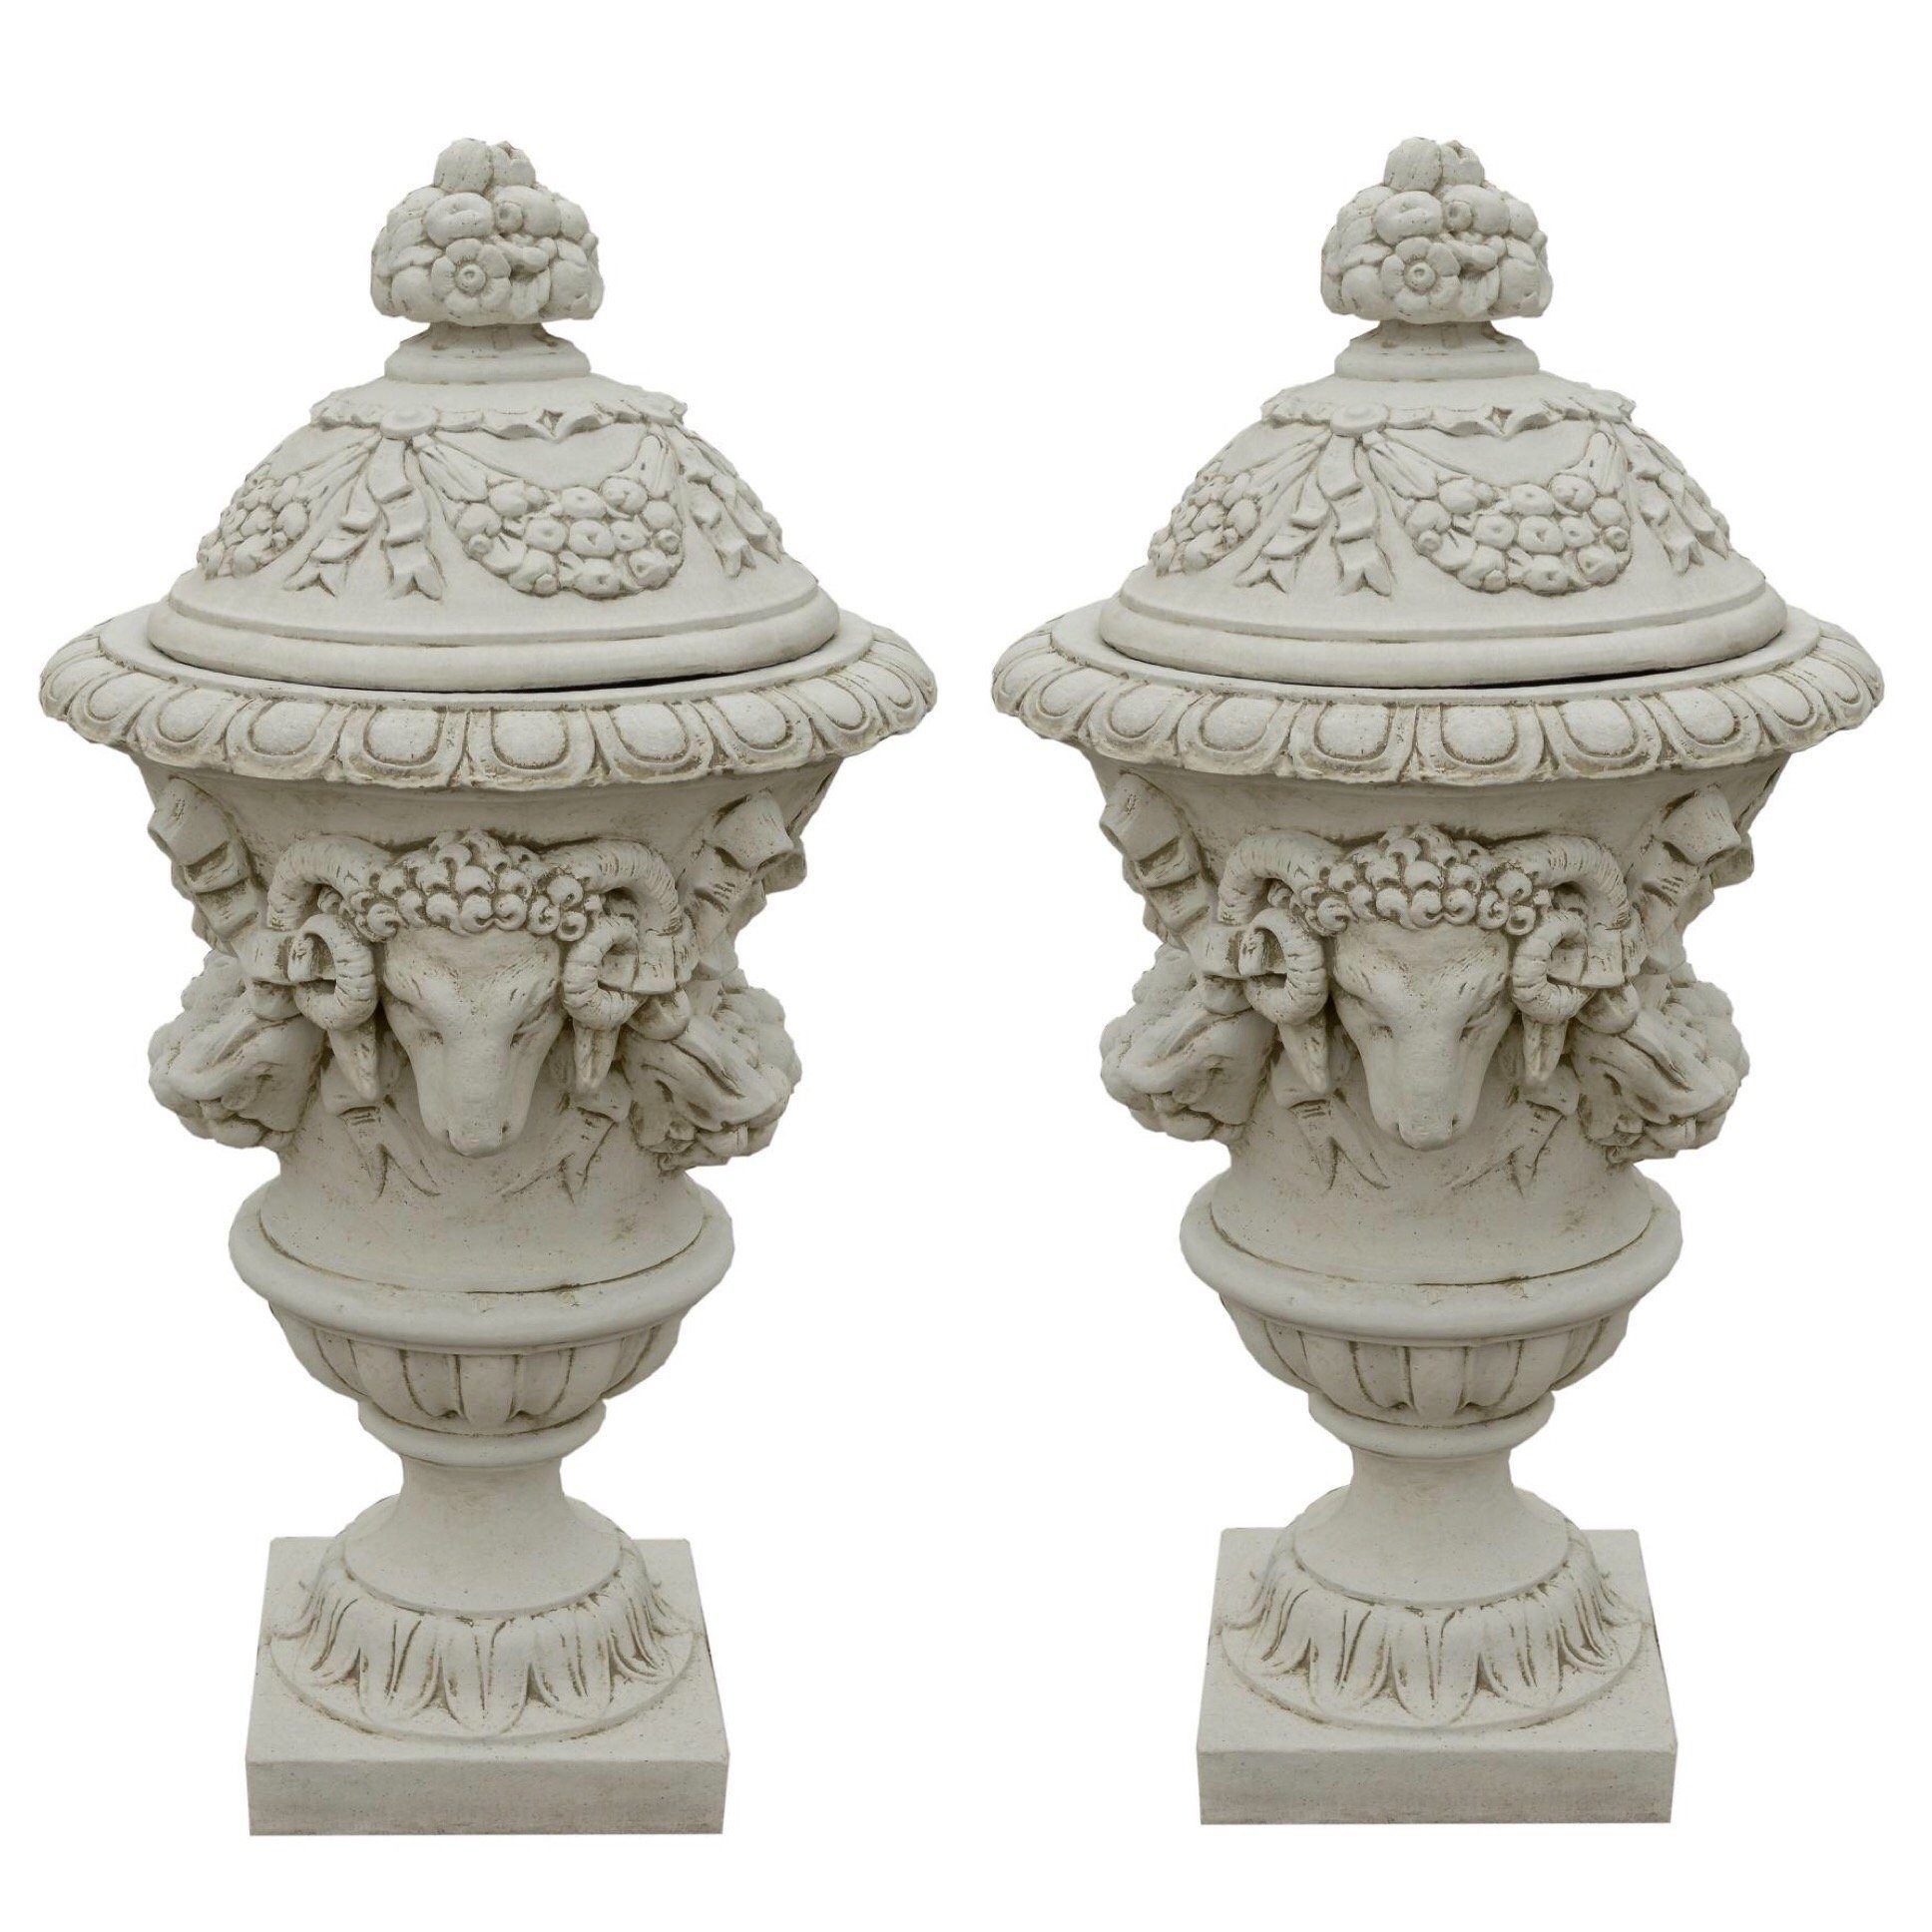 Top-Produktbewertung Antikes Wohndesign Pflanzschale 2 x Pflanzkübel Vase Steinvase Pflanz Blumenkübel Amphore Amphorenvase